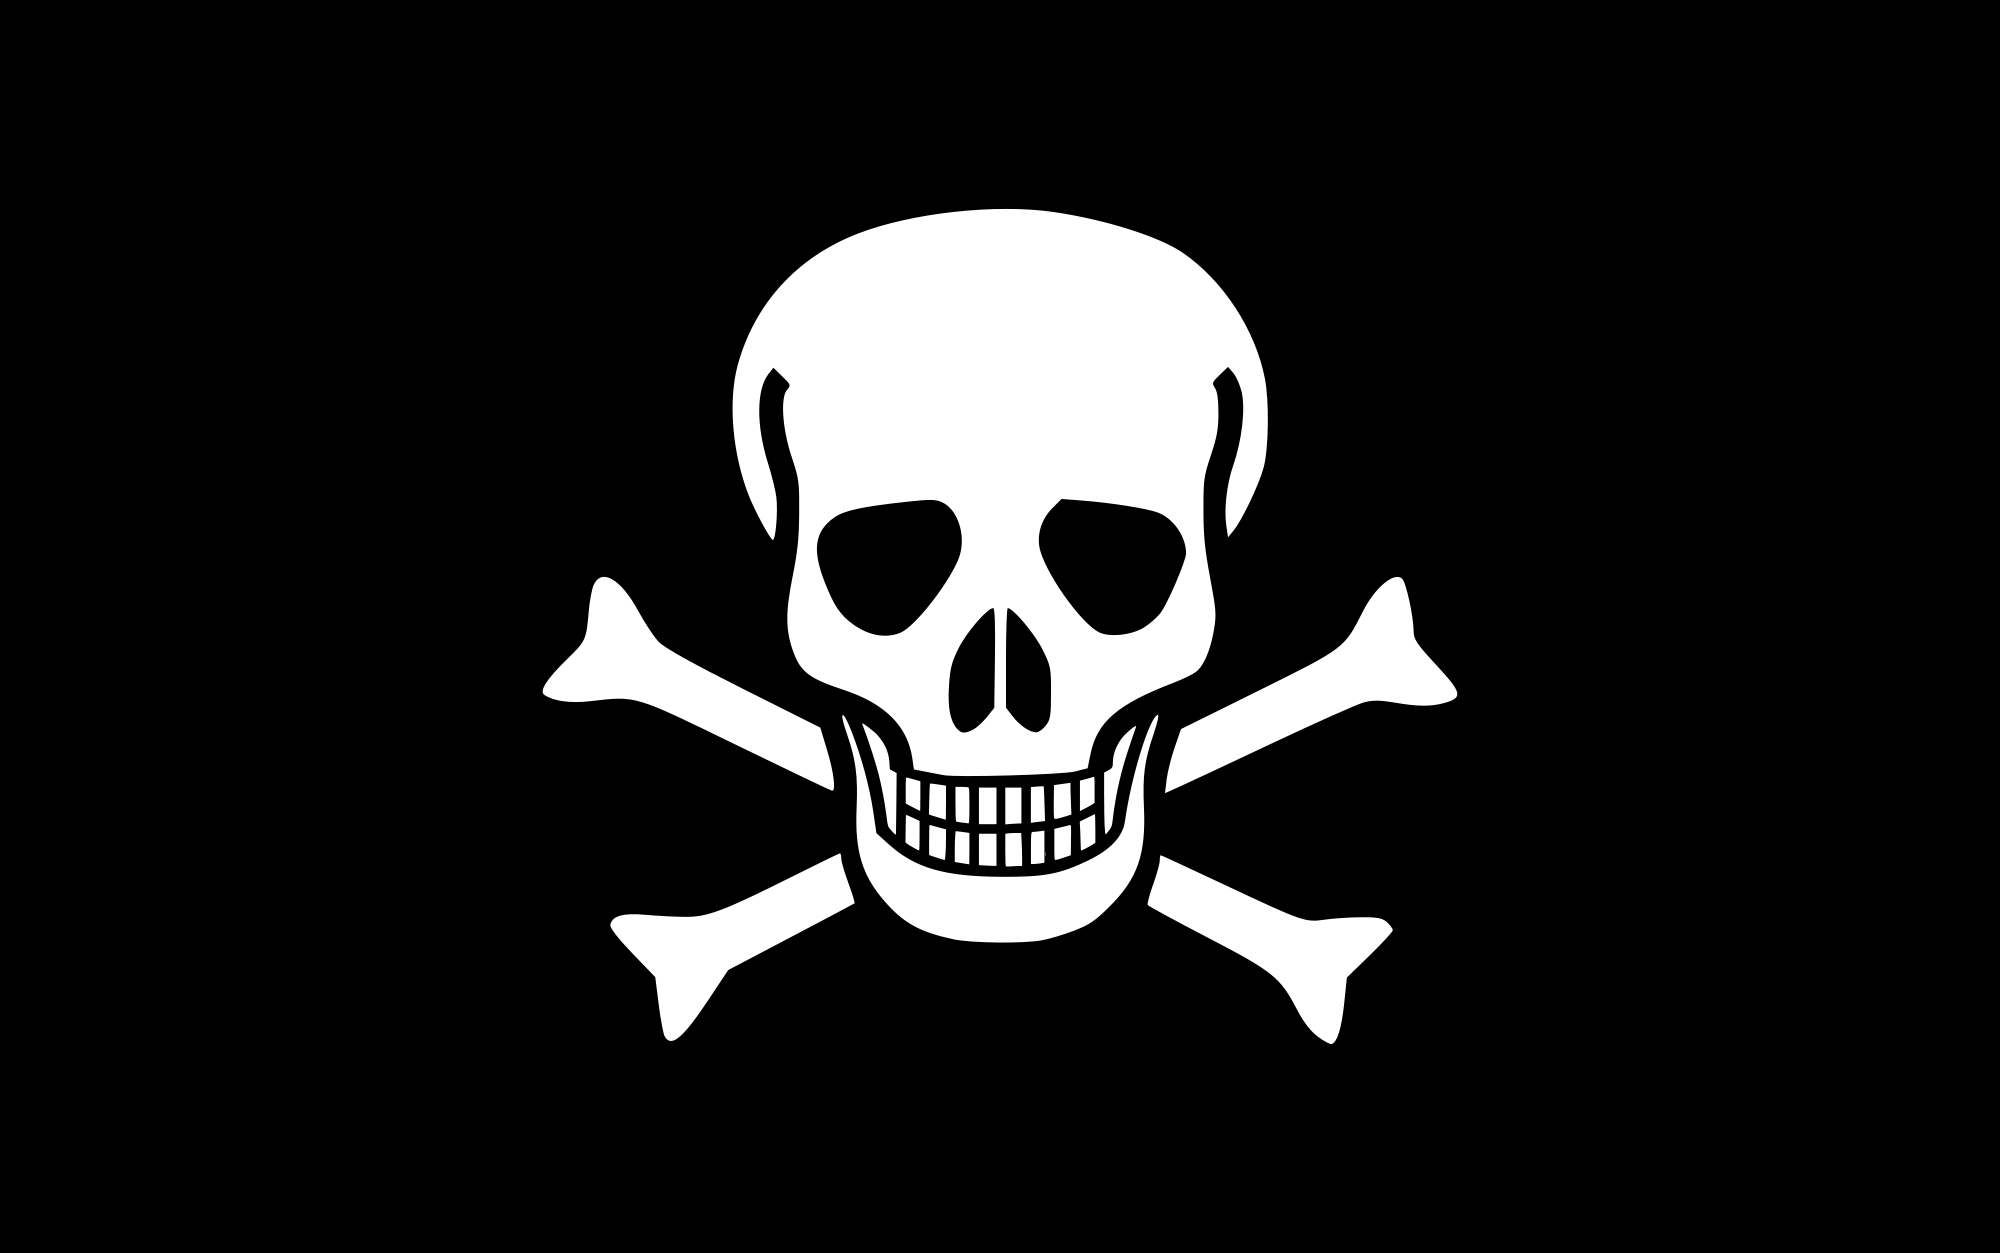 Skull Black and White Logo - Jolly Roger